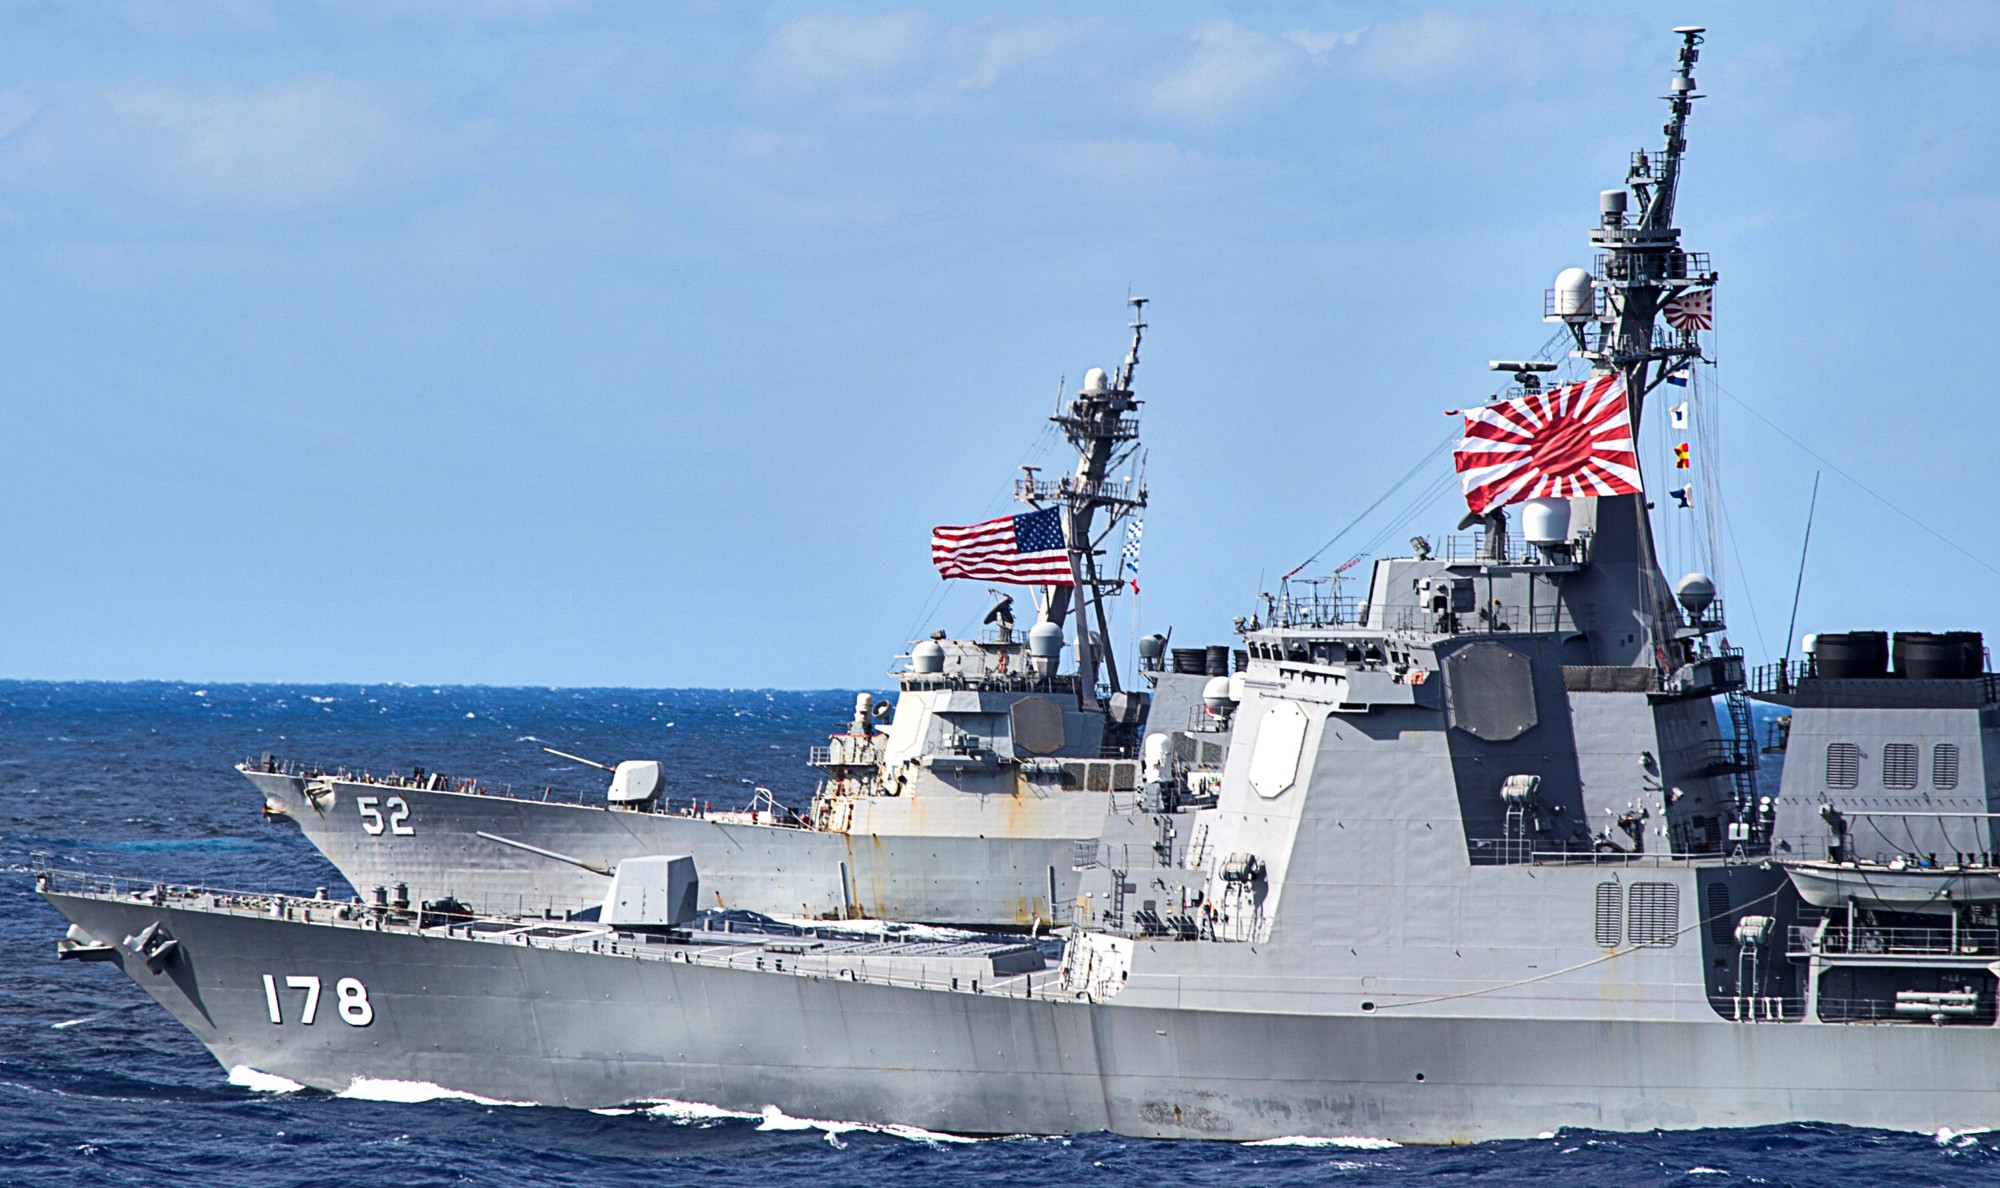 ddg-178 jds ashigara guided missile destroyer japan maritime self defense force jmsdf 12